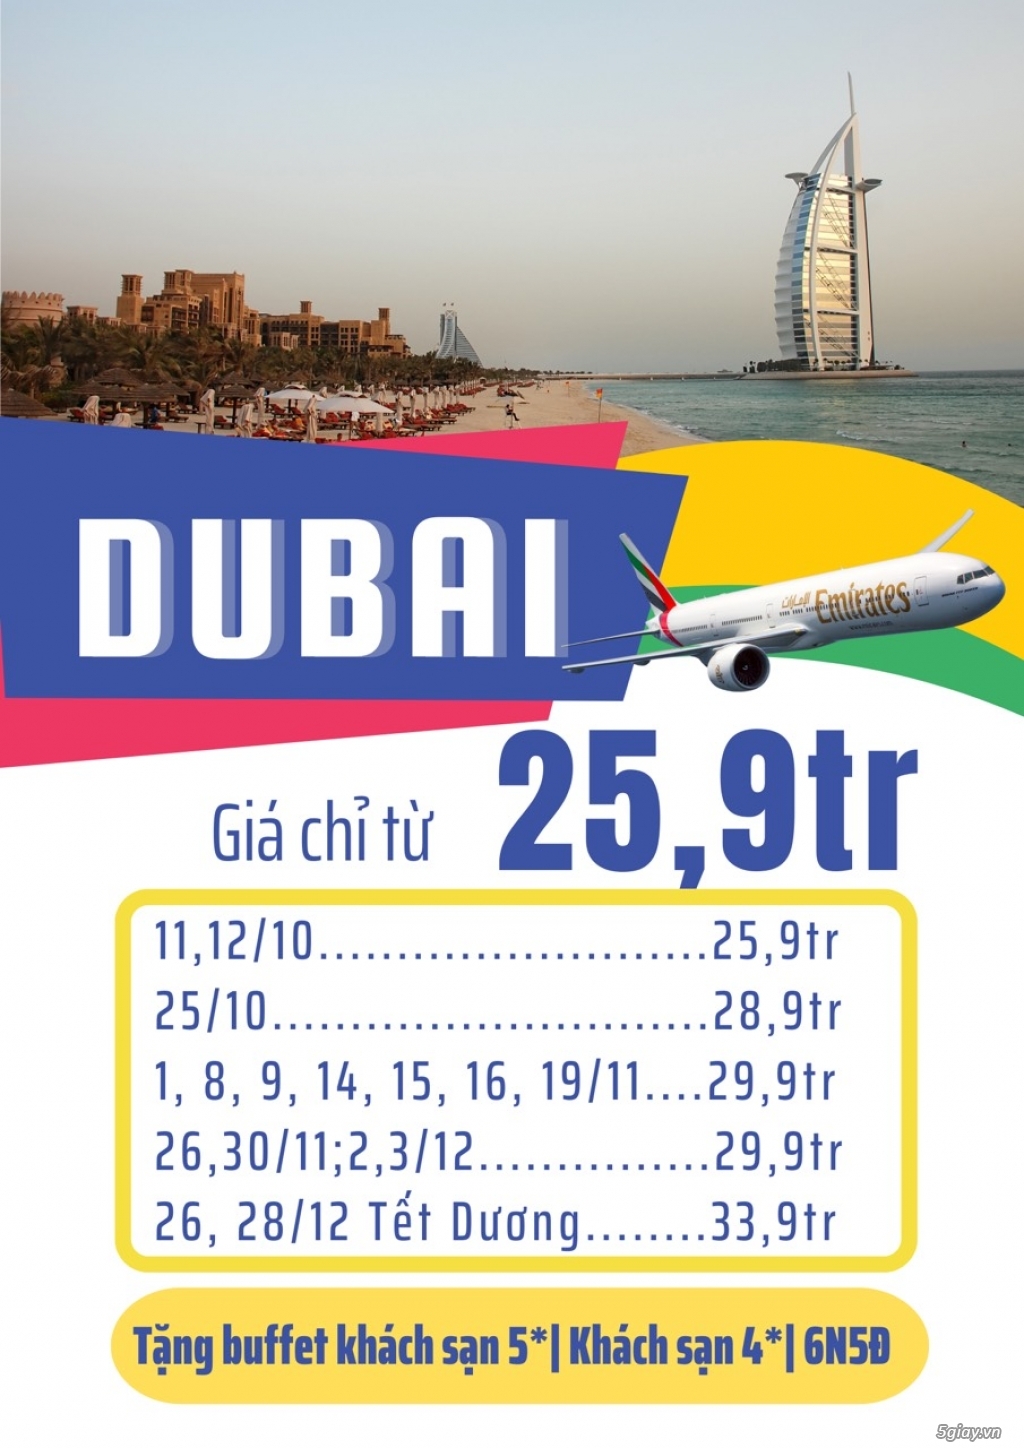 Tour Du Lịch DUBAI giá Rẻ Nhất Thị Trường năm 2022 - 2